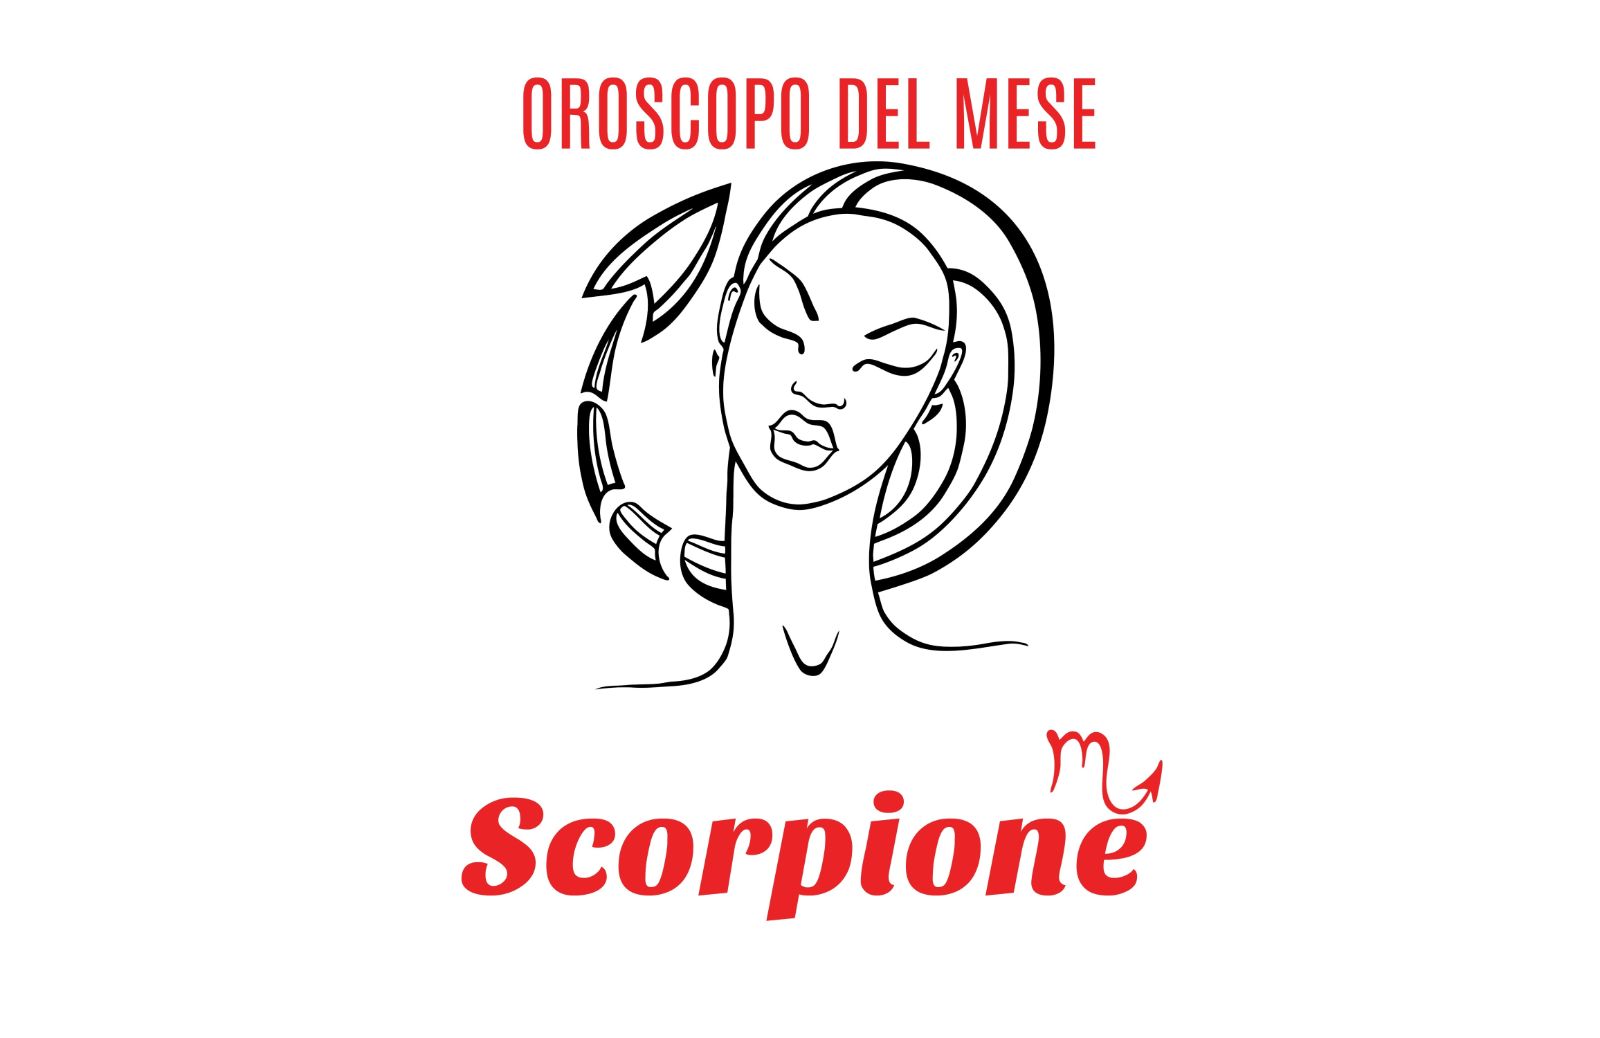 Oroscopo del mese: Scorpione - novembre 2018